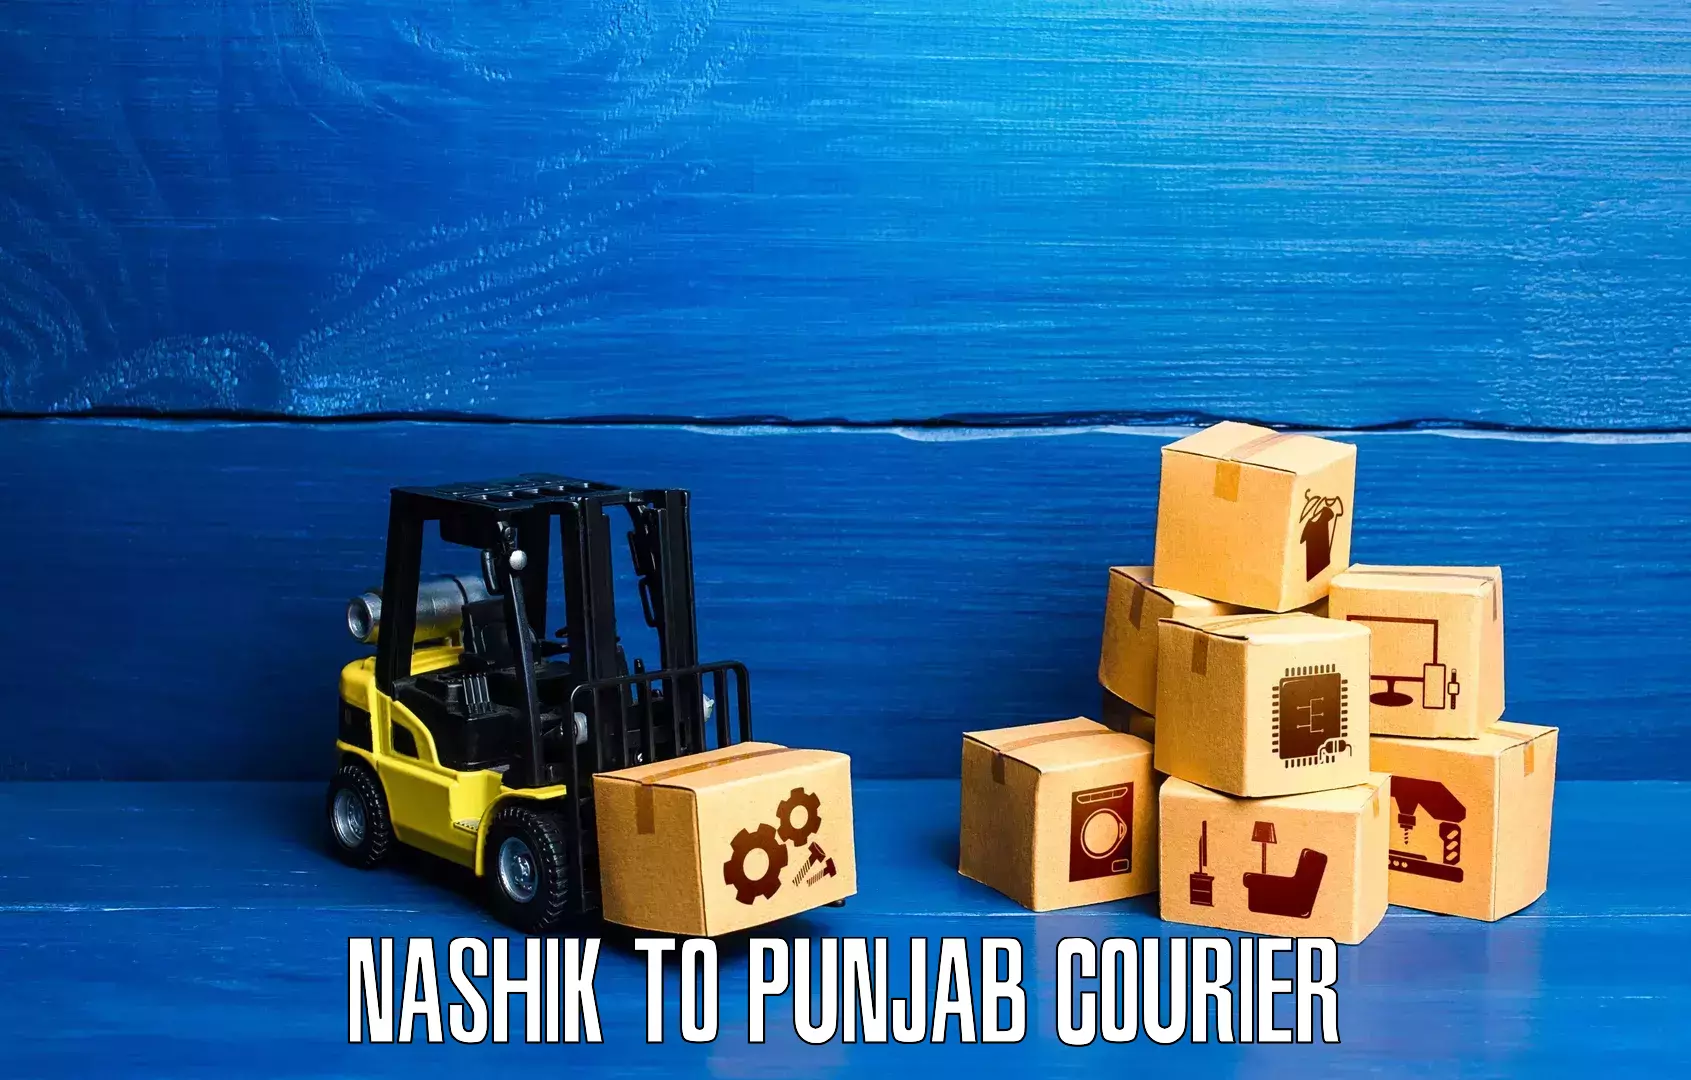 Postal and courier services Nashik to Jalandhar